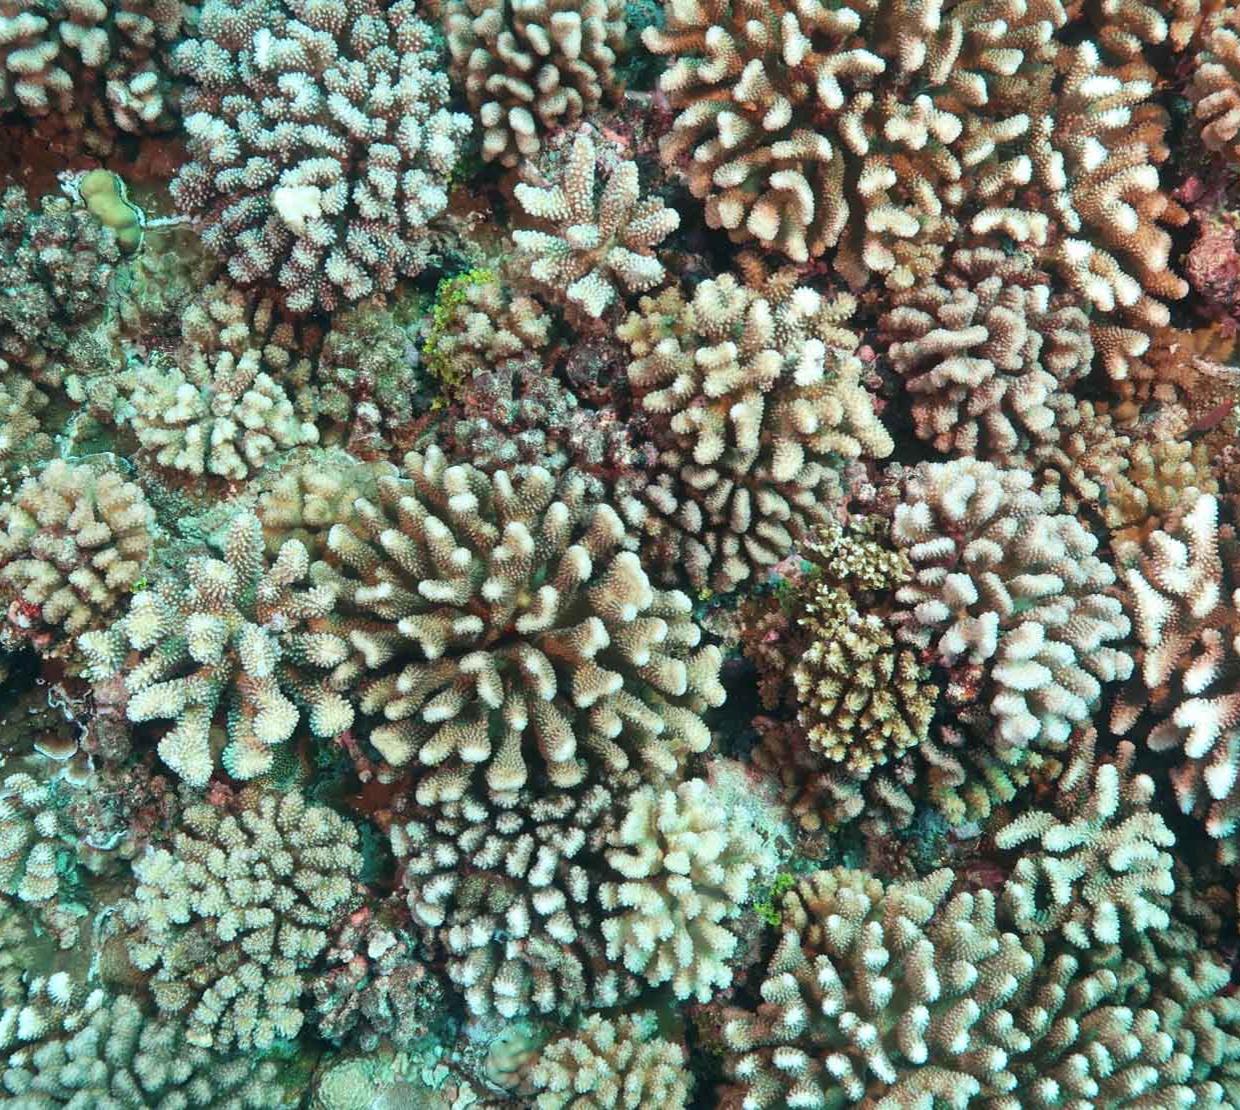 Aerial shot of coral reef.